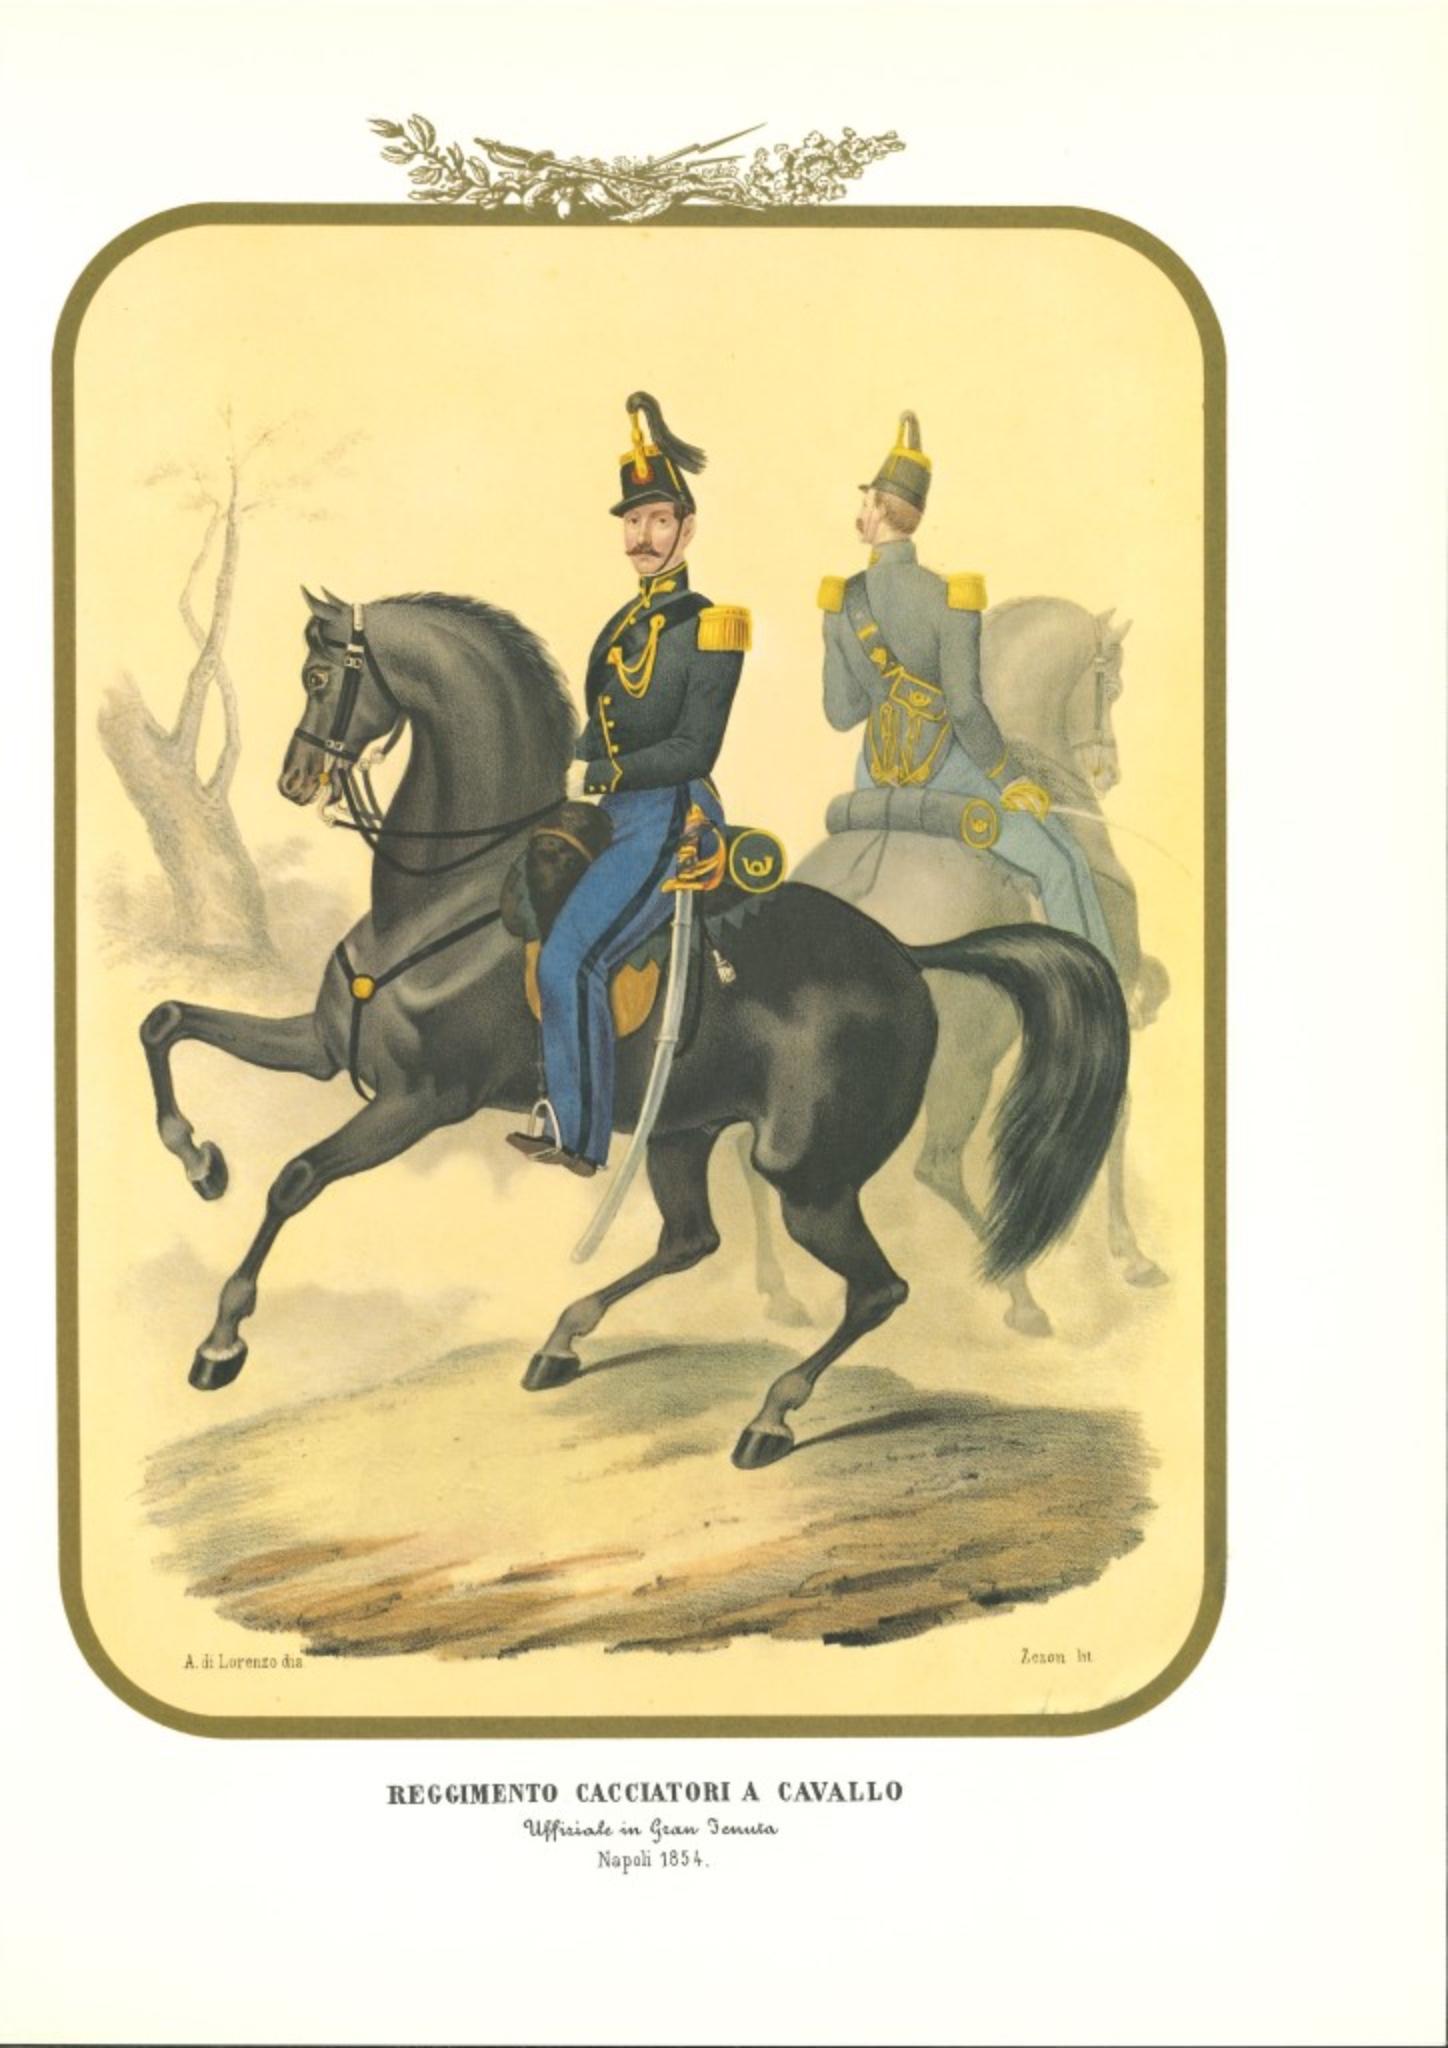 Regiment von Jägern zu Pferd 2 ist eine Lithographie von Antonio Zezon. Neapel 1854.

Interessante kolorierte Lithografie, die zwei Mitglieder des Jägerregiments zu Pferd zeigt: im Vordergrund ein Offizier auf seinem Pferd.

In ausgezeichnetem